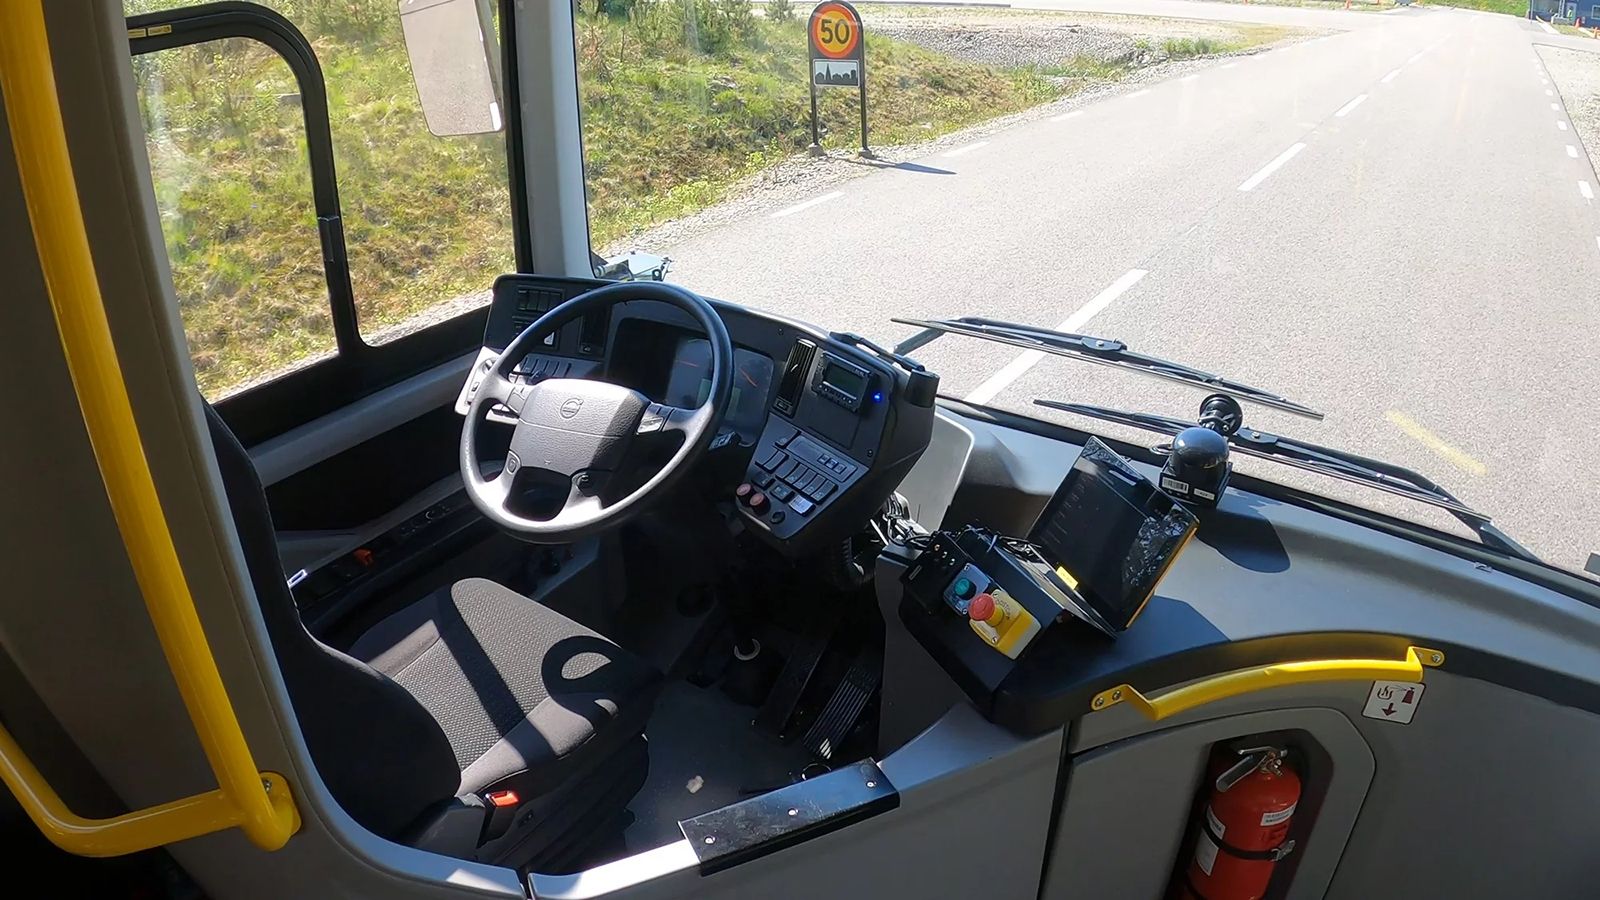 Η Volvo σε συνεργασία με σουηδικό πανεπιστήμιο διερευνά το πώς βλέπουν οι επιβάτες τις μετακινήσεις τους με λεωφορεία που κινούνται πλήρως αυτόνομα.